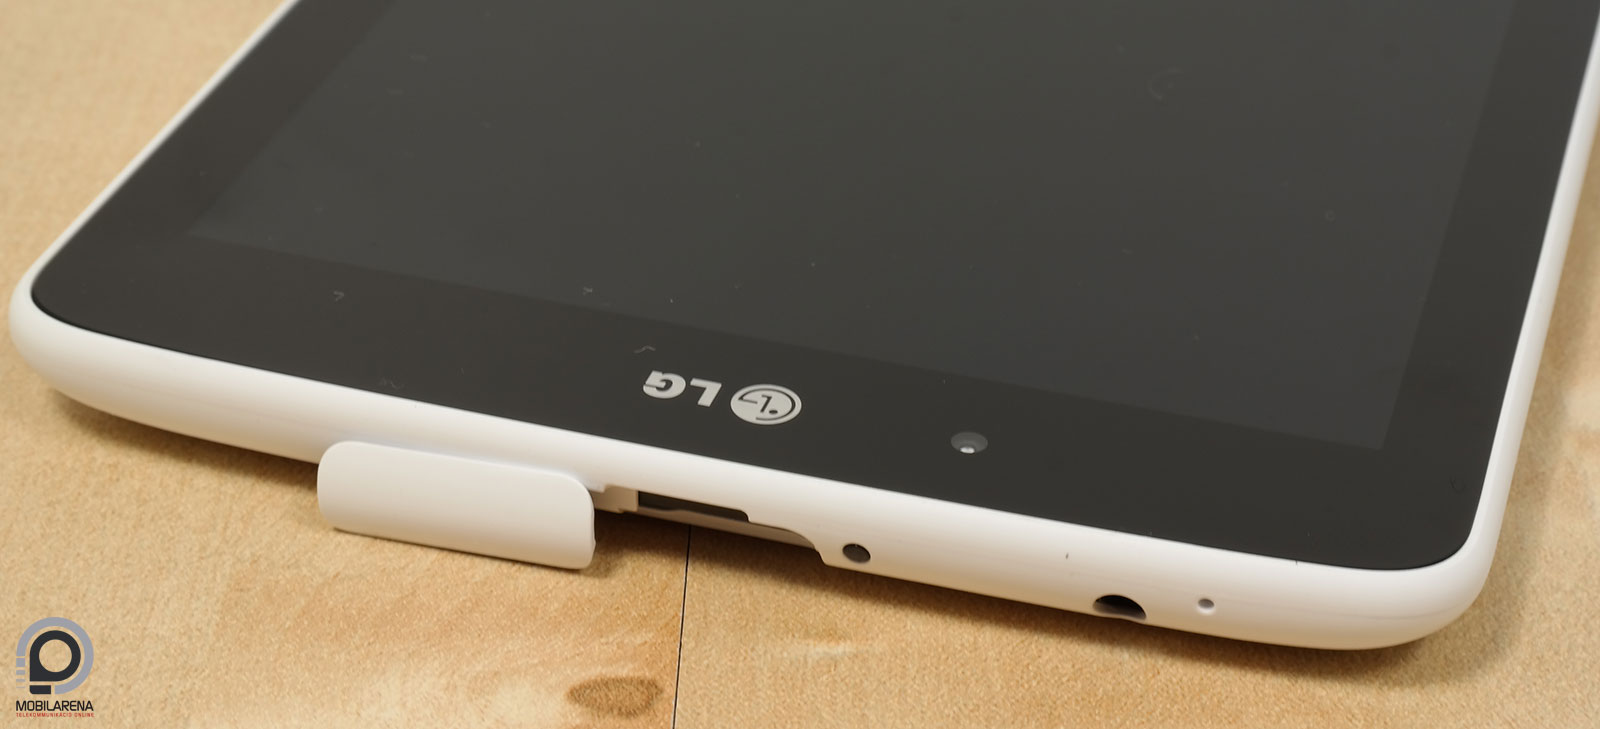 LG G Pad 7.0 - a következő epizód - Mobilarena Tablet teszt - Nyomtatóbarát  verzió